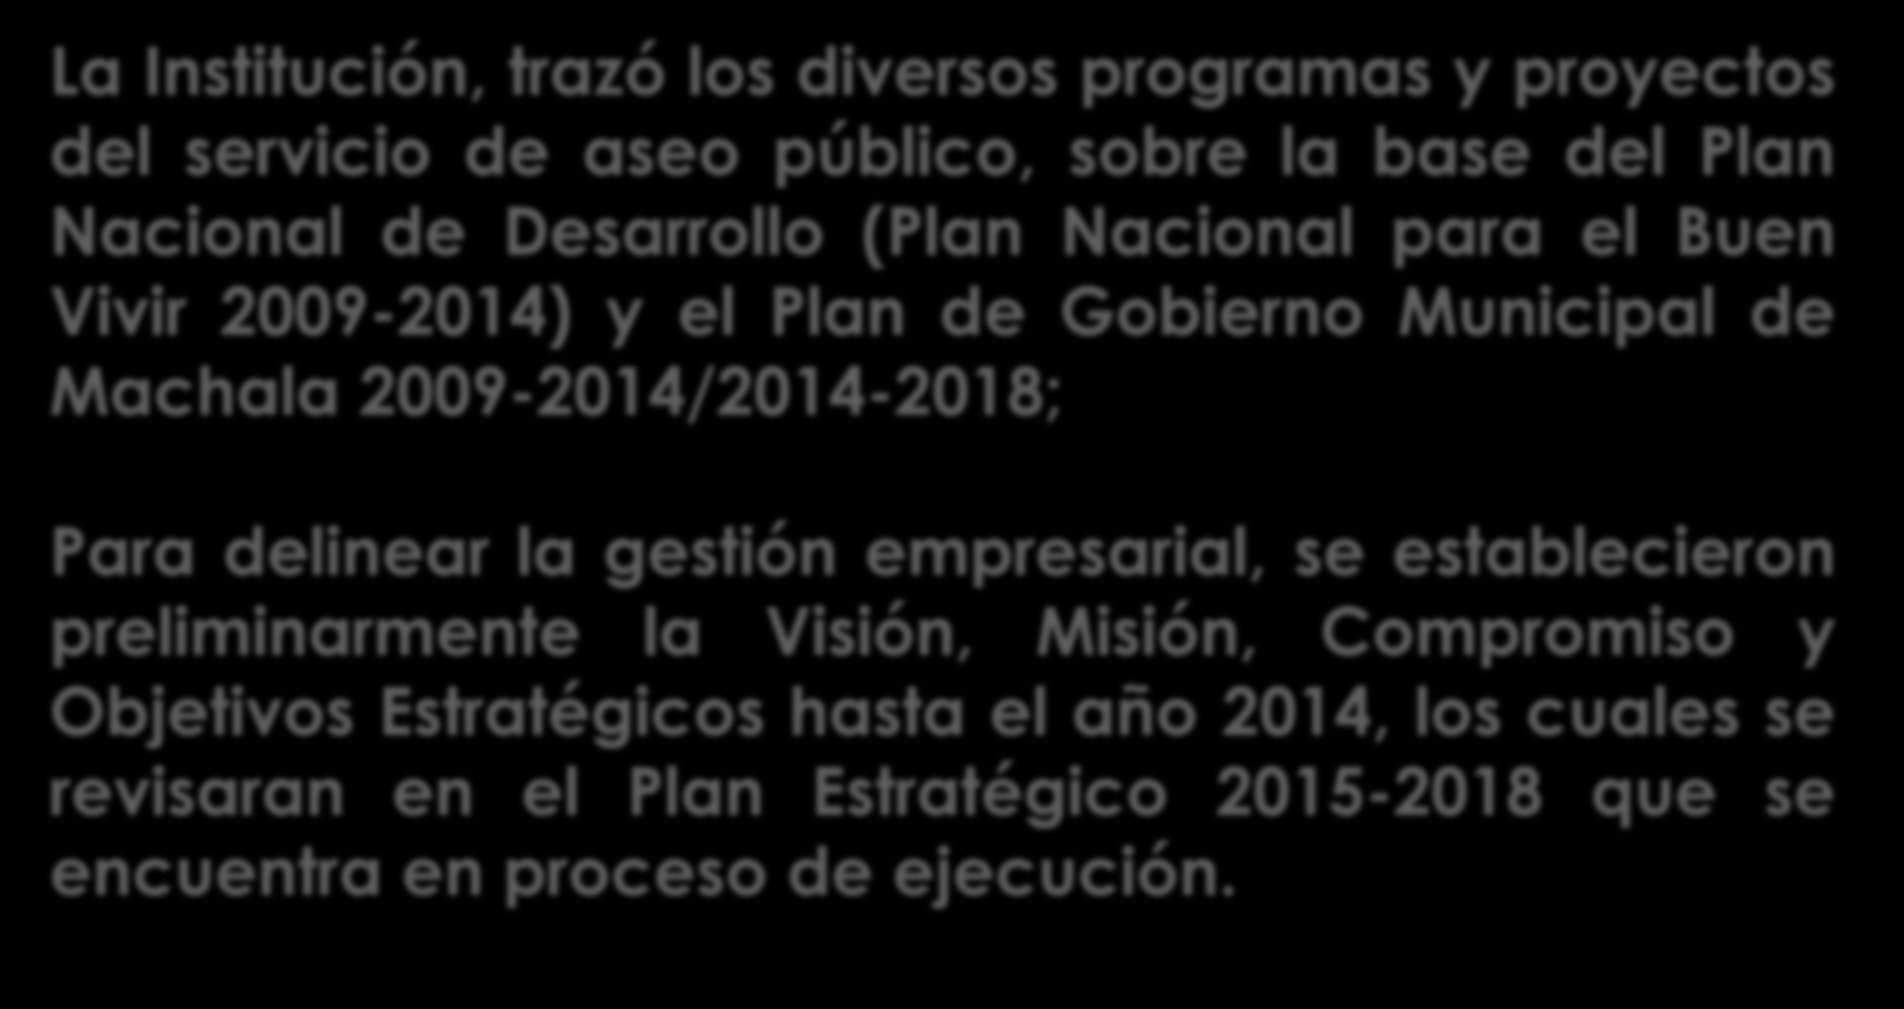 PLANIFICACION ESTRATEGICA EMERGENTE La Institución, trazó los diversos programas y proyectos del servicio de aseo público, sobre la base del Plan Nacional de Desarrollo (Plan Nacional para el Buen